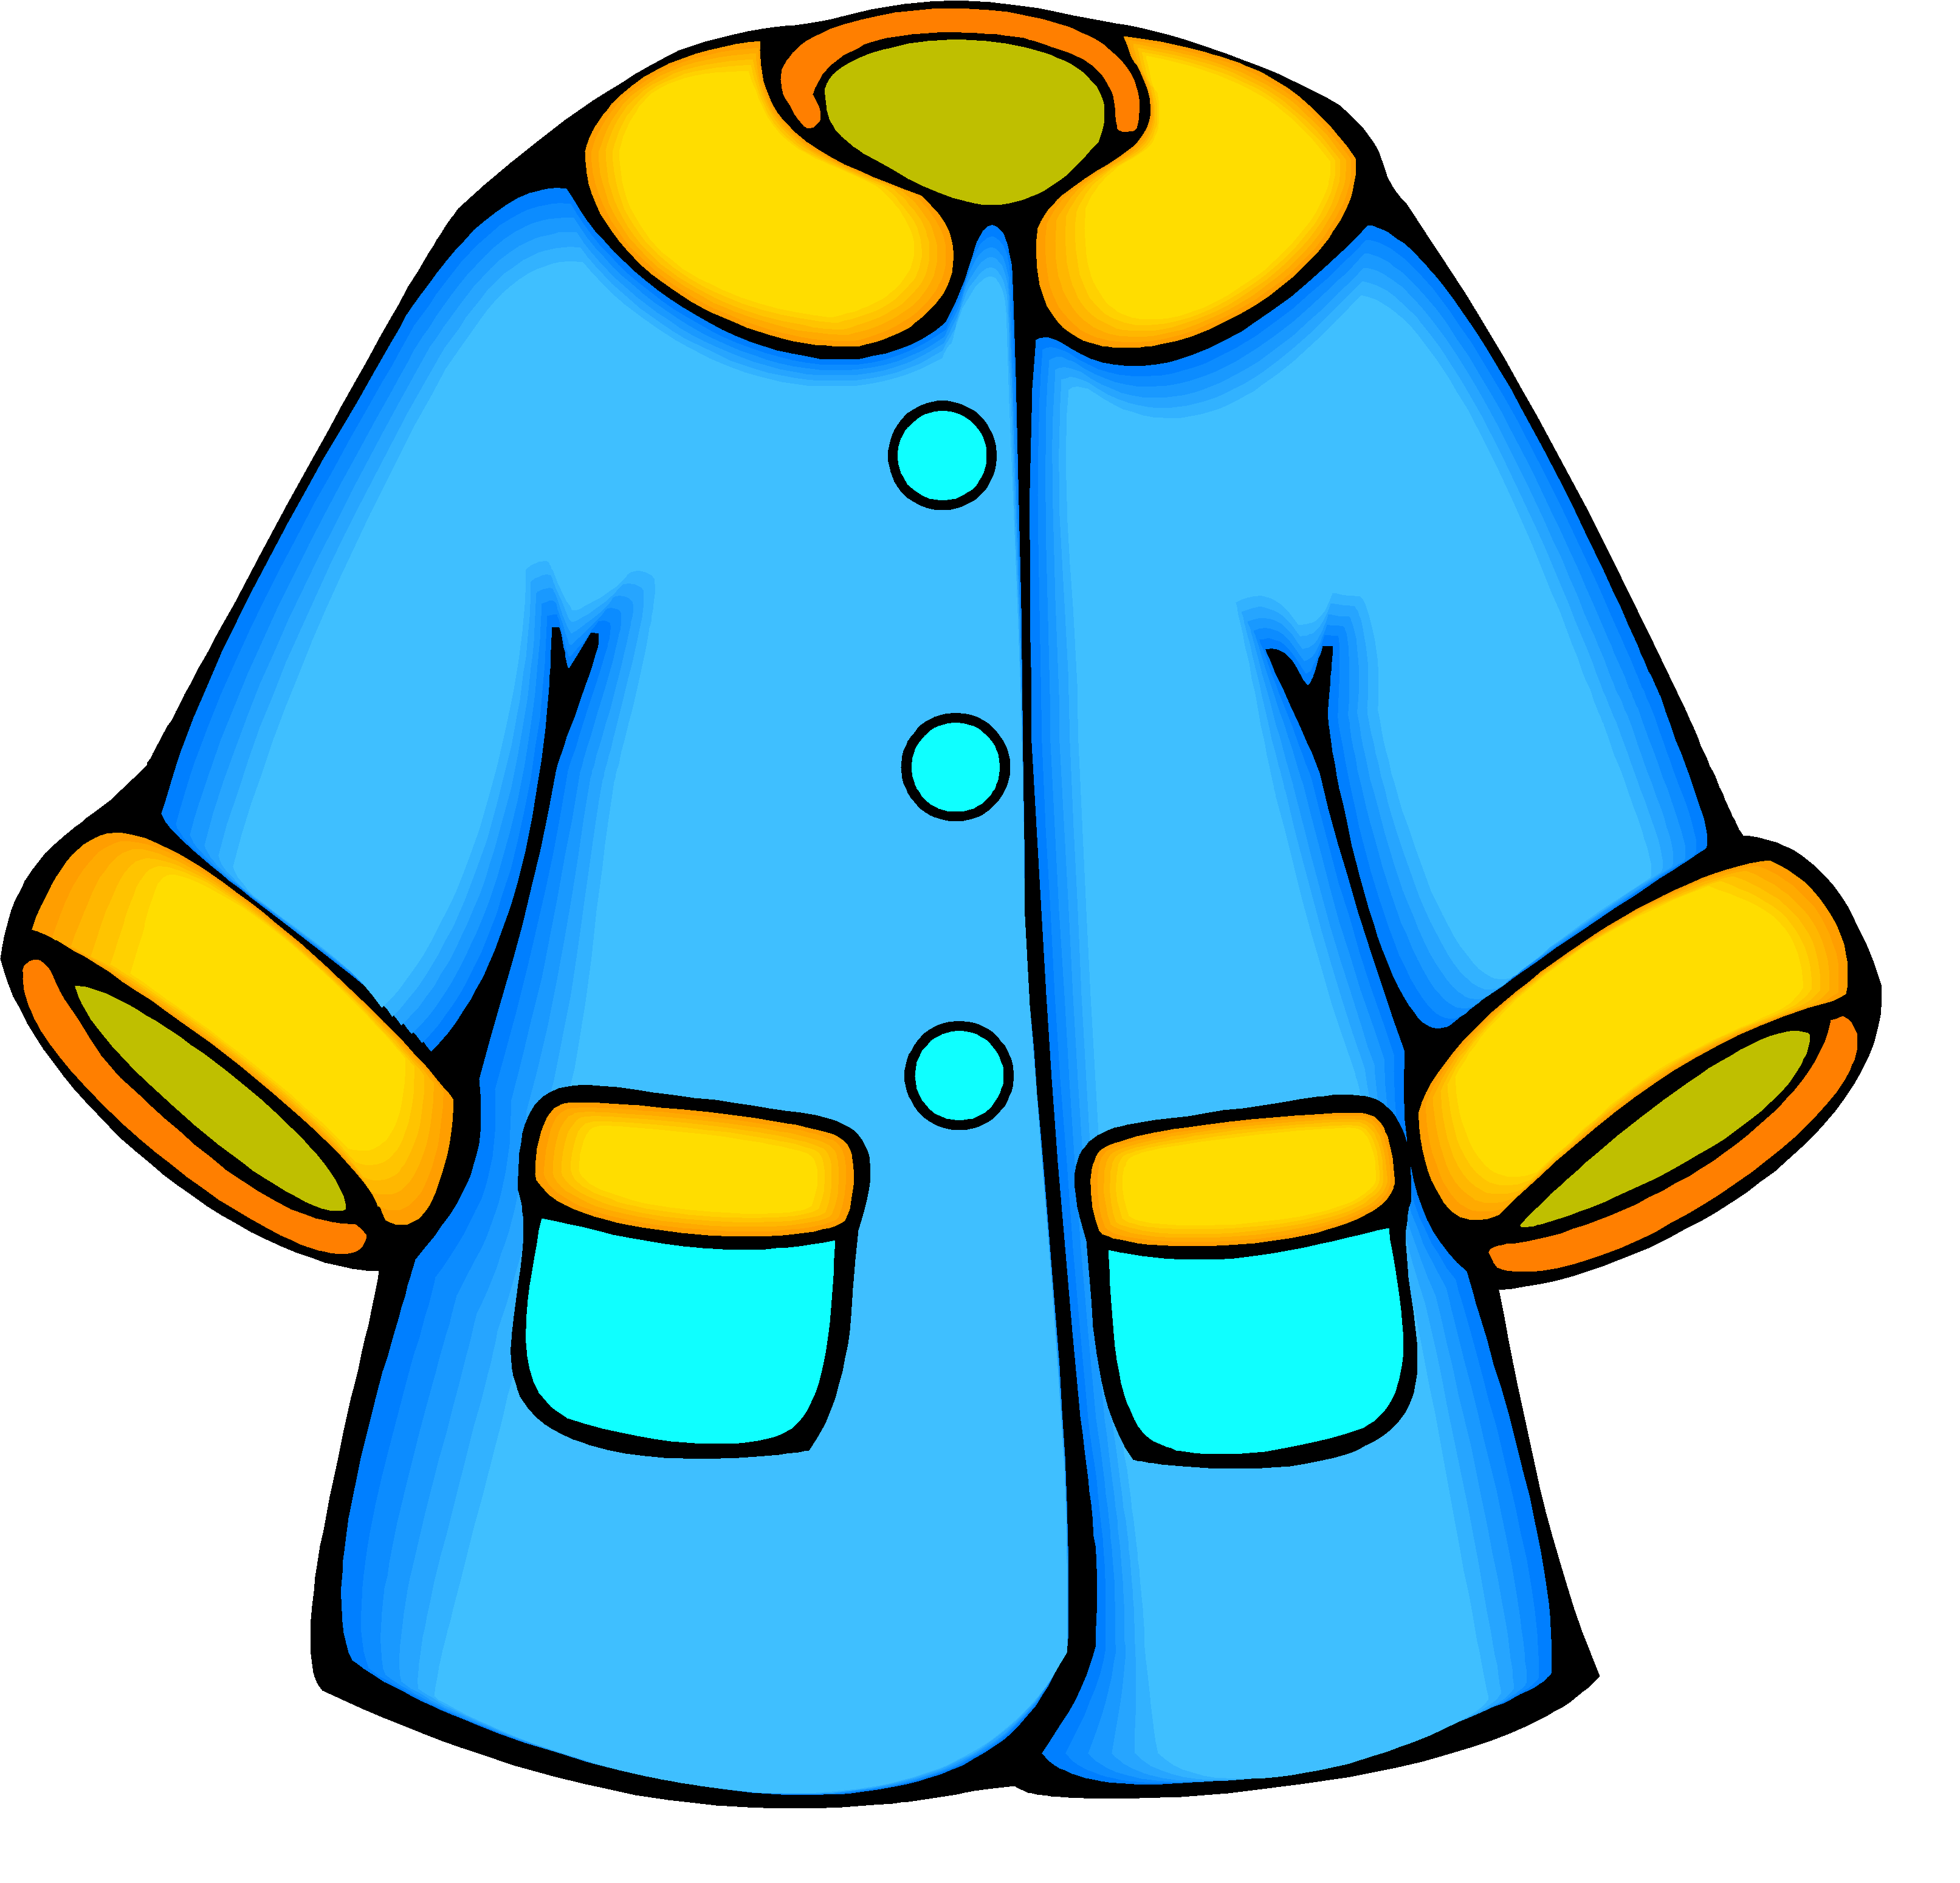 Coat clipart jaket, Coat jaket Transparent FREE for download on